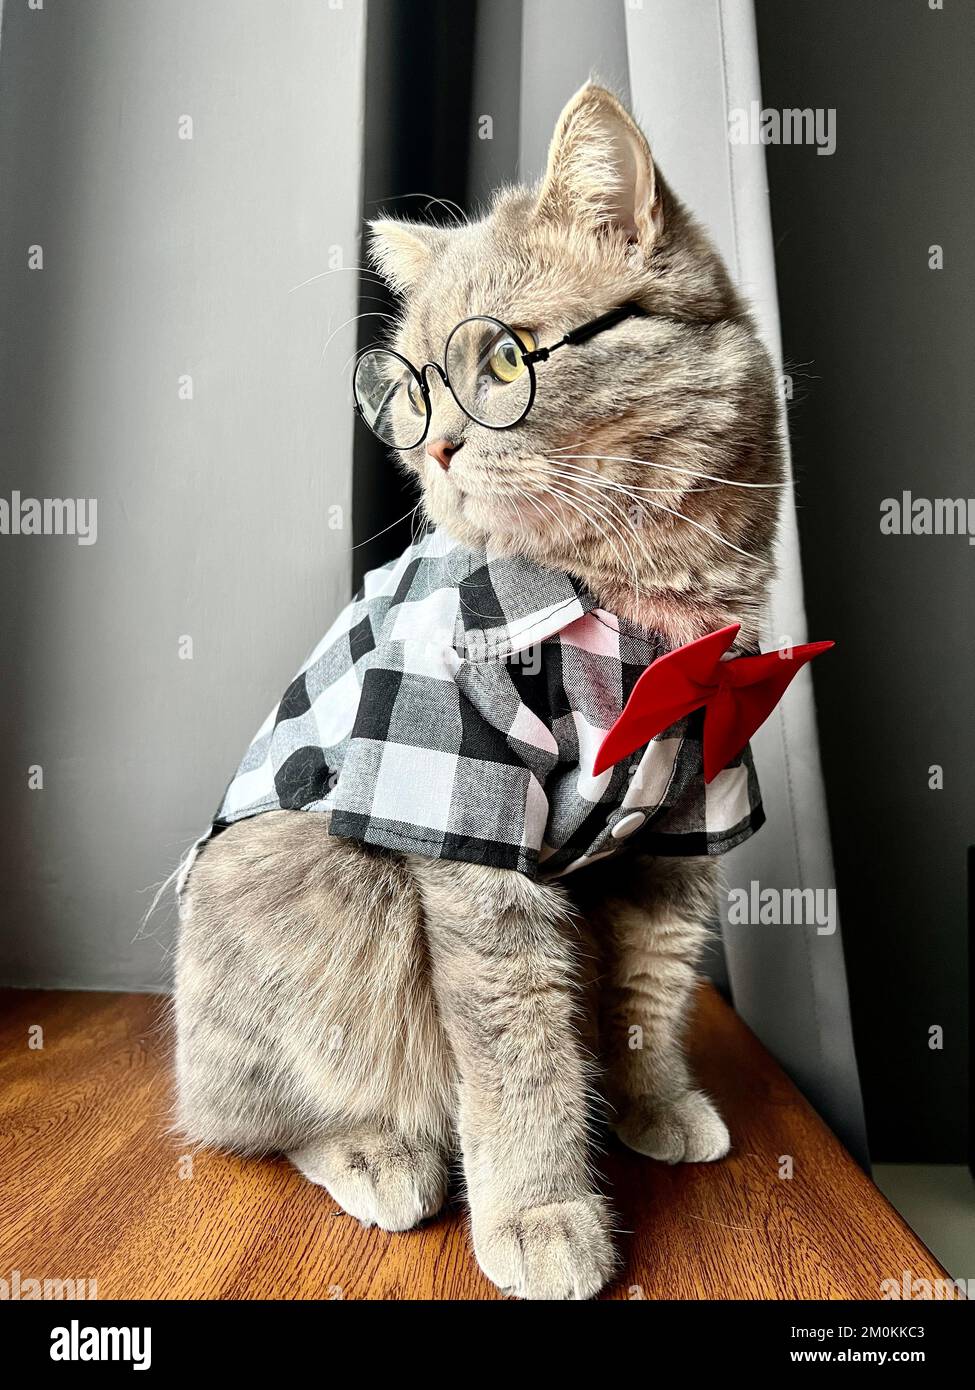 Un chat écossais gris à oreilles droites avec des lunettes, une chemise  noire blanche et une cravate rouge aux vacances ressemble à un gentleman.  Animaux de compagnie dans un appartement moderne et